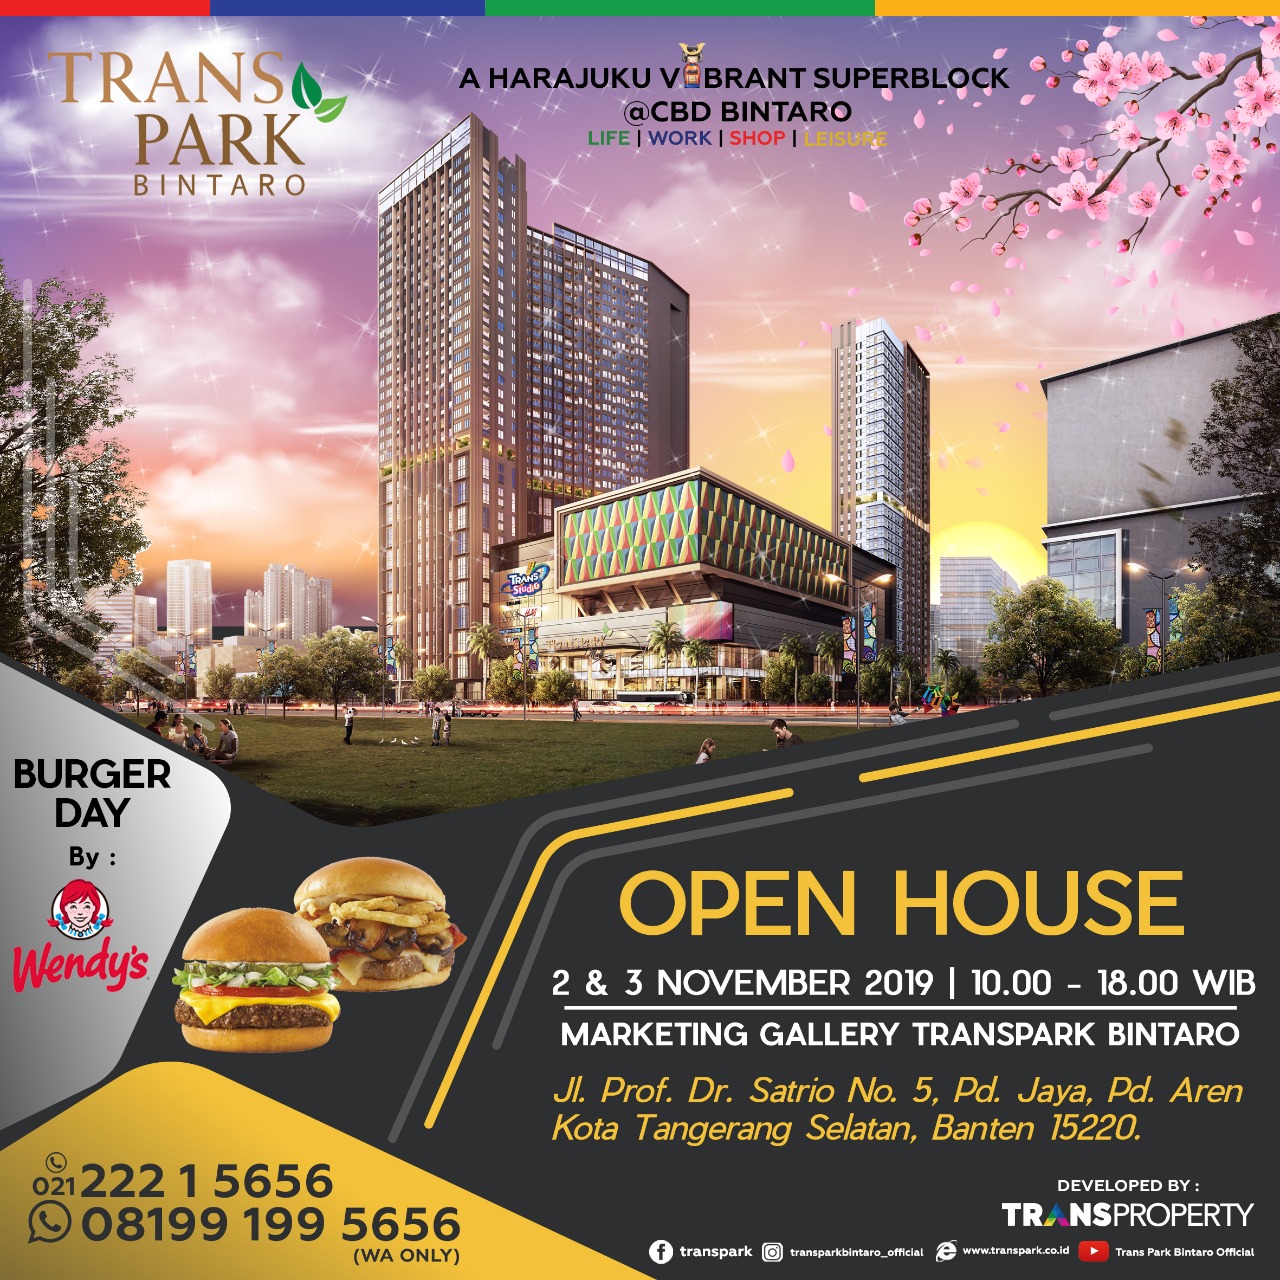 Open House Transpark Bintaro 2 & 3 November 2019